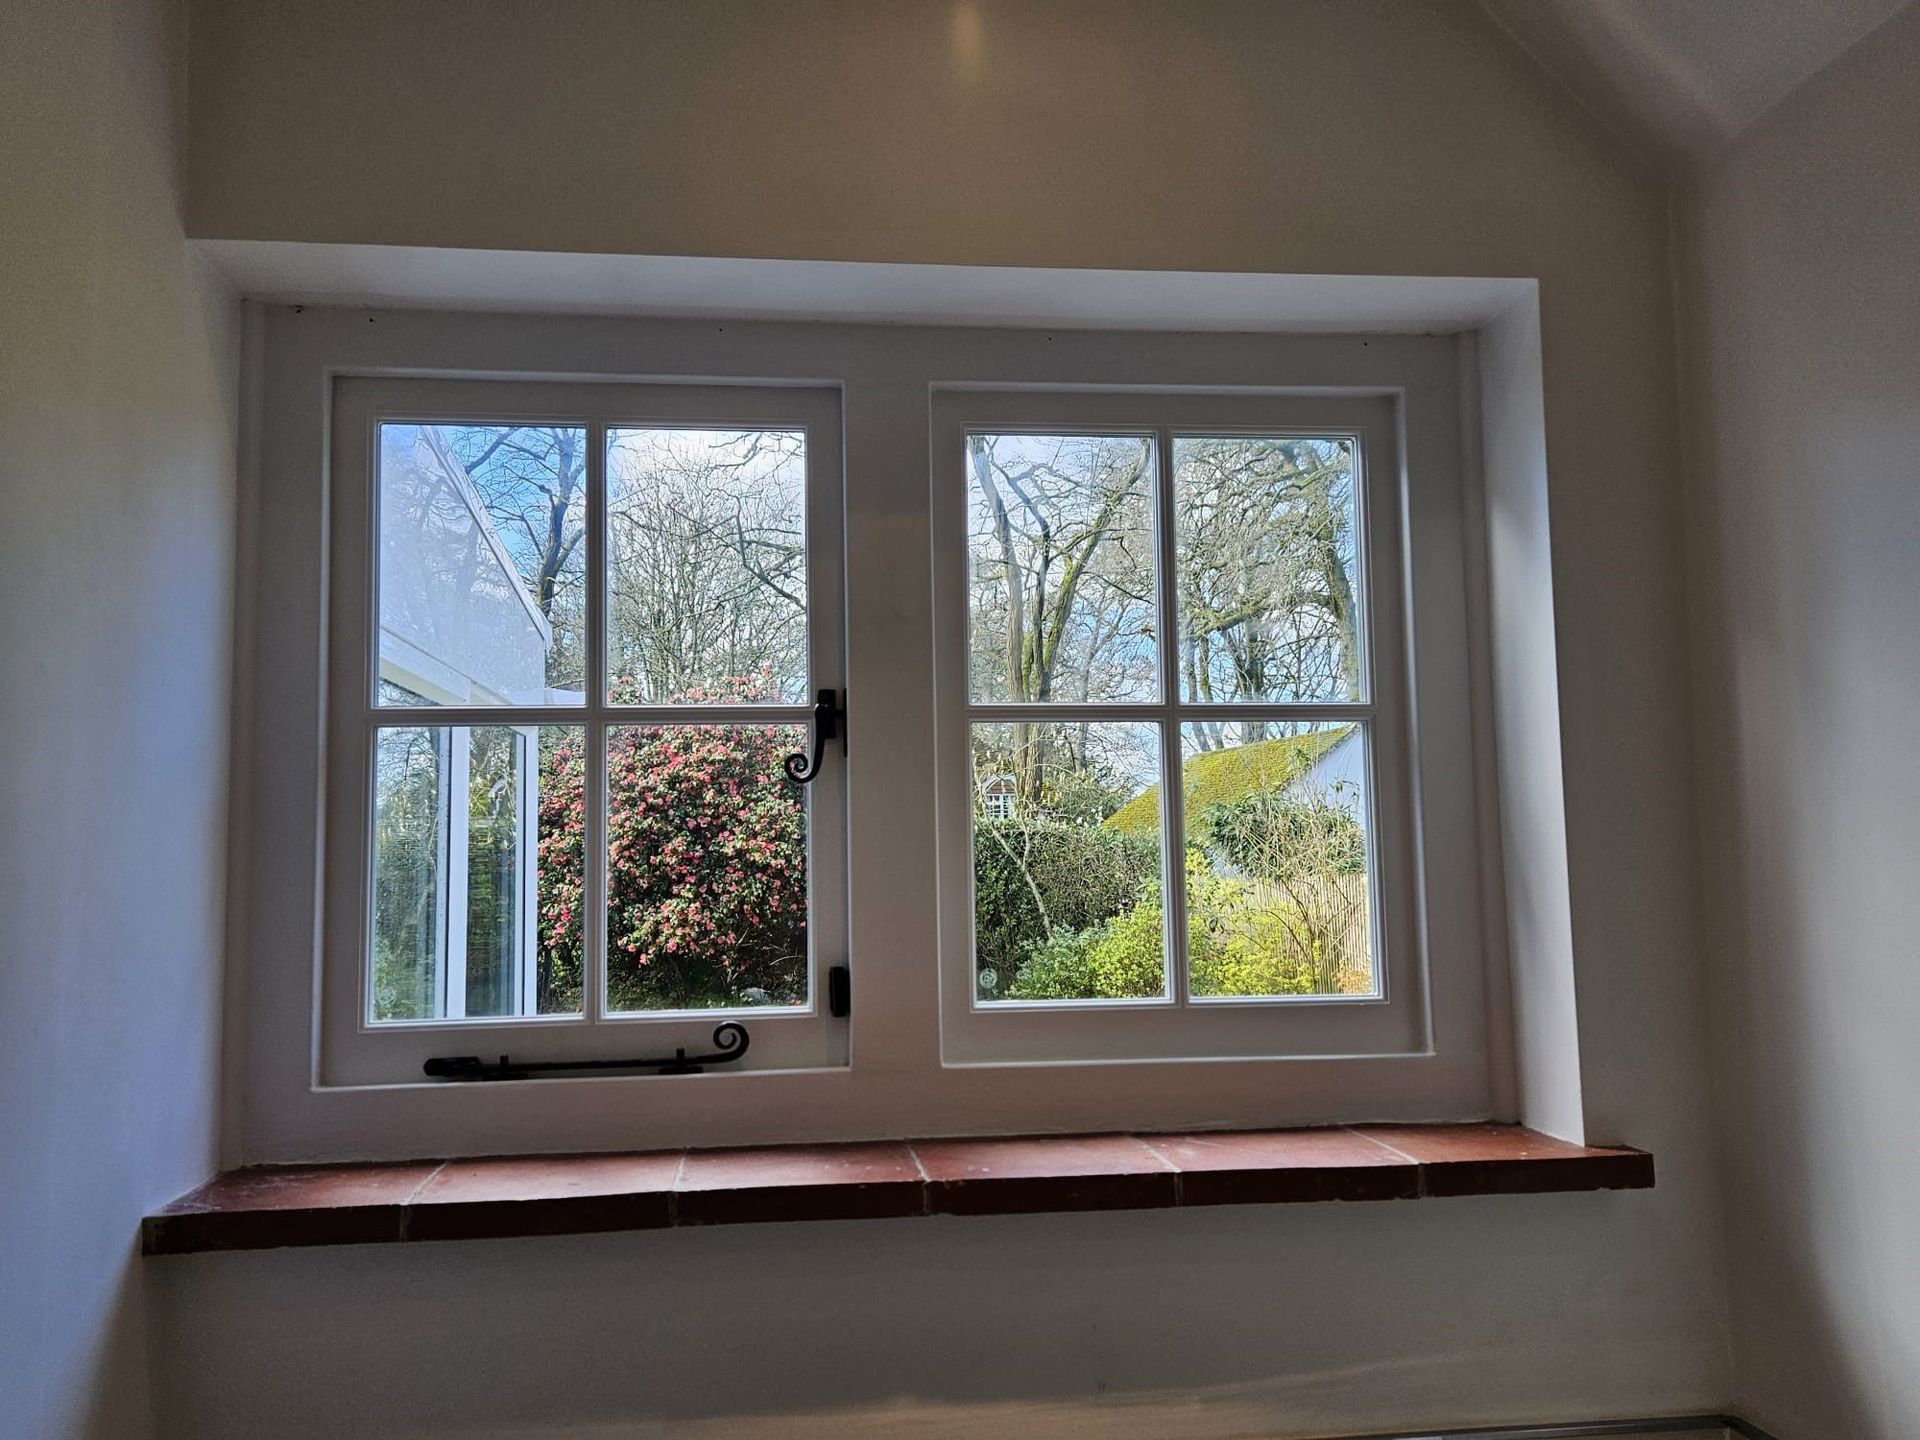 Midhurst Windows and Doors